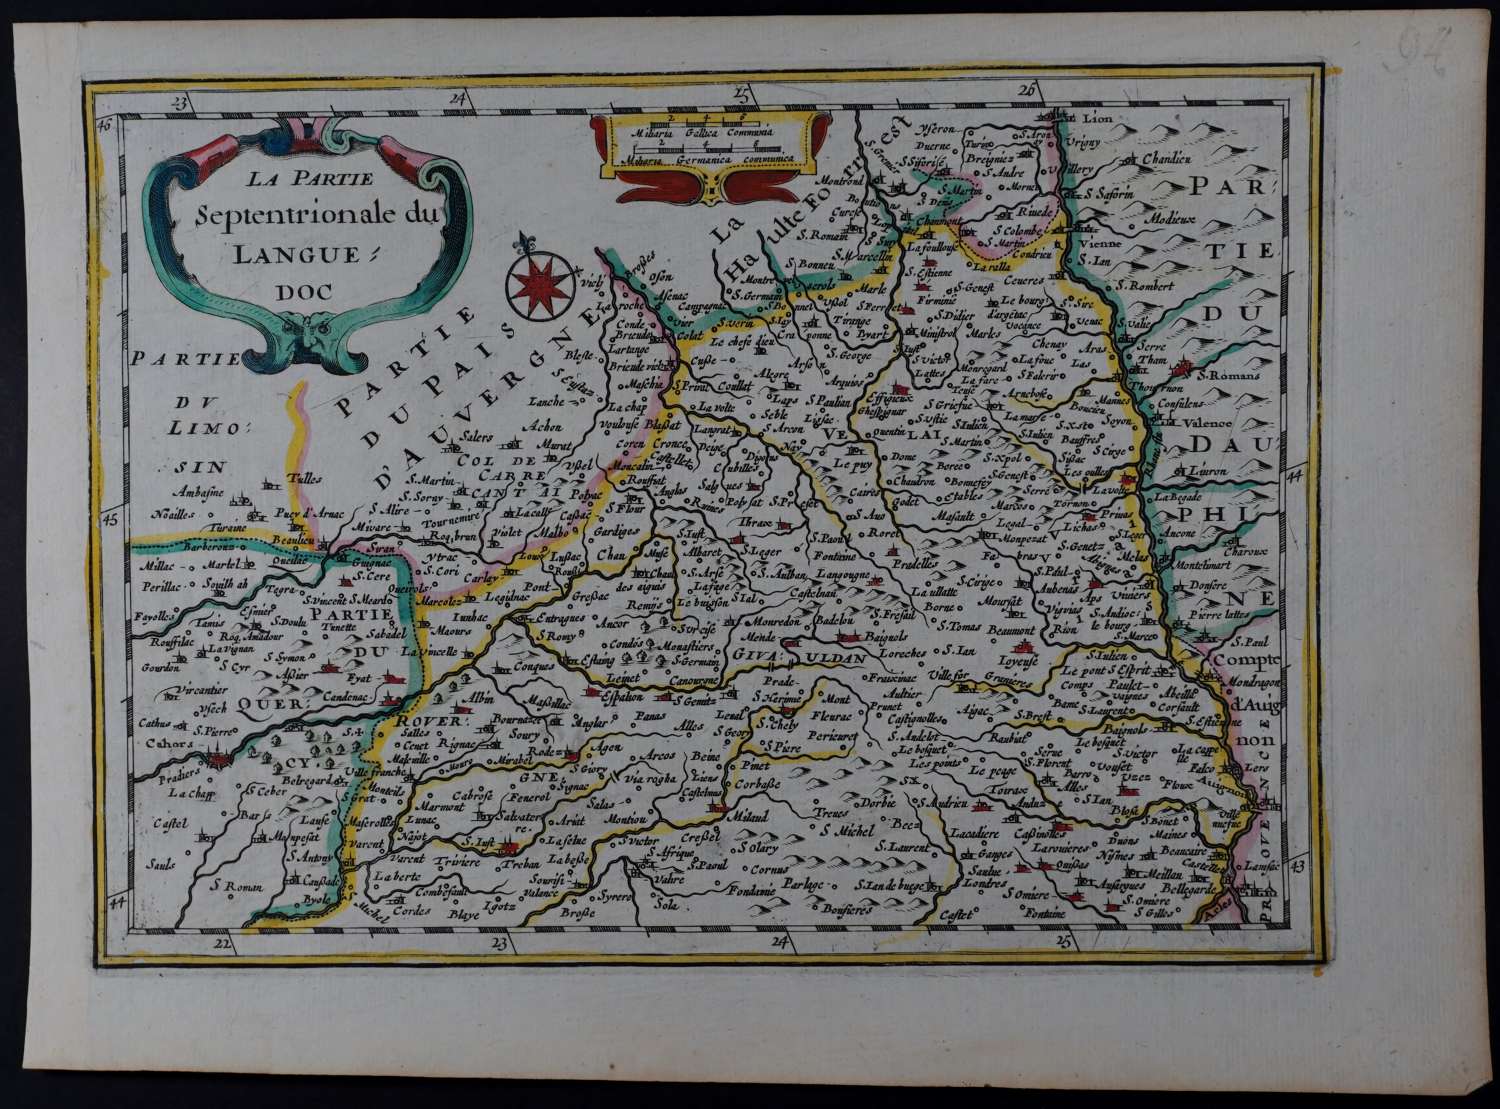 La Partie Septentrionale du Languedoc by Cloppenburgh, H.Van Evertsz